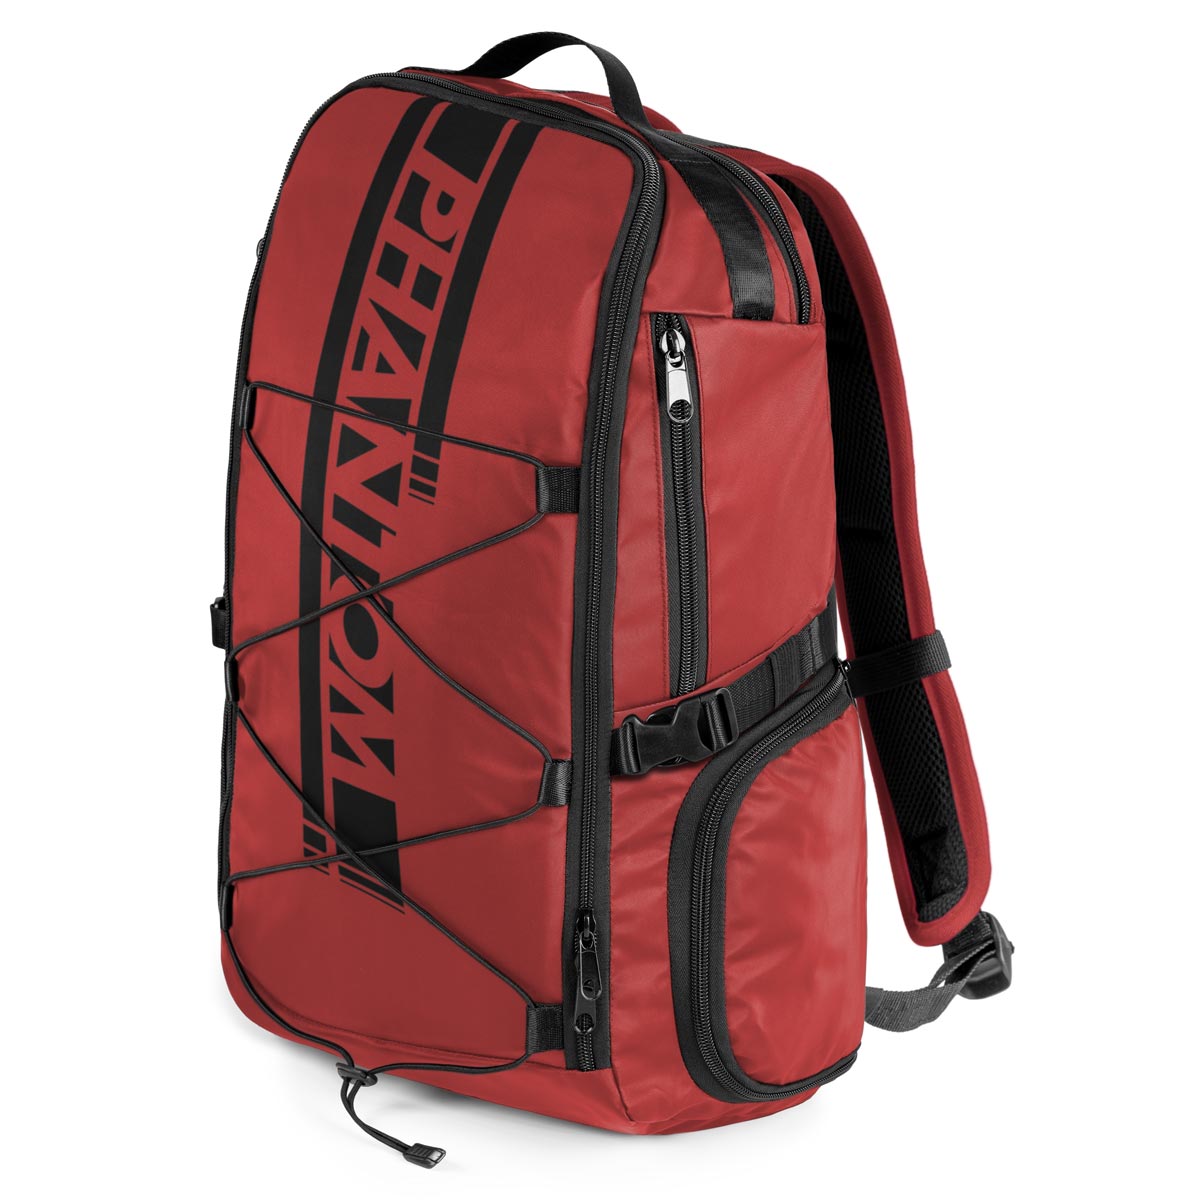 Novi Phantom APEX ruksak za borilačke vještine. Kompaktan i kvalitetne izrade. Dovoljno prostora za pohranu za vaš dnevni trening. 